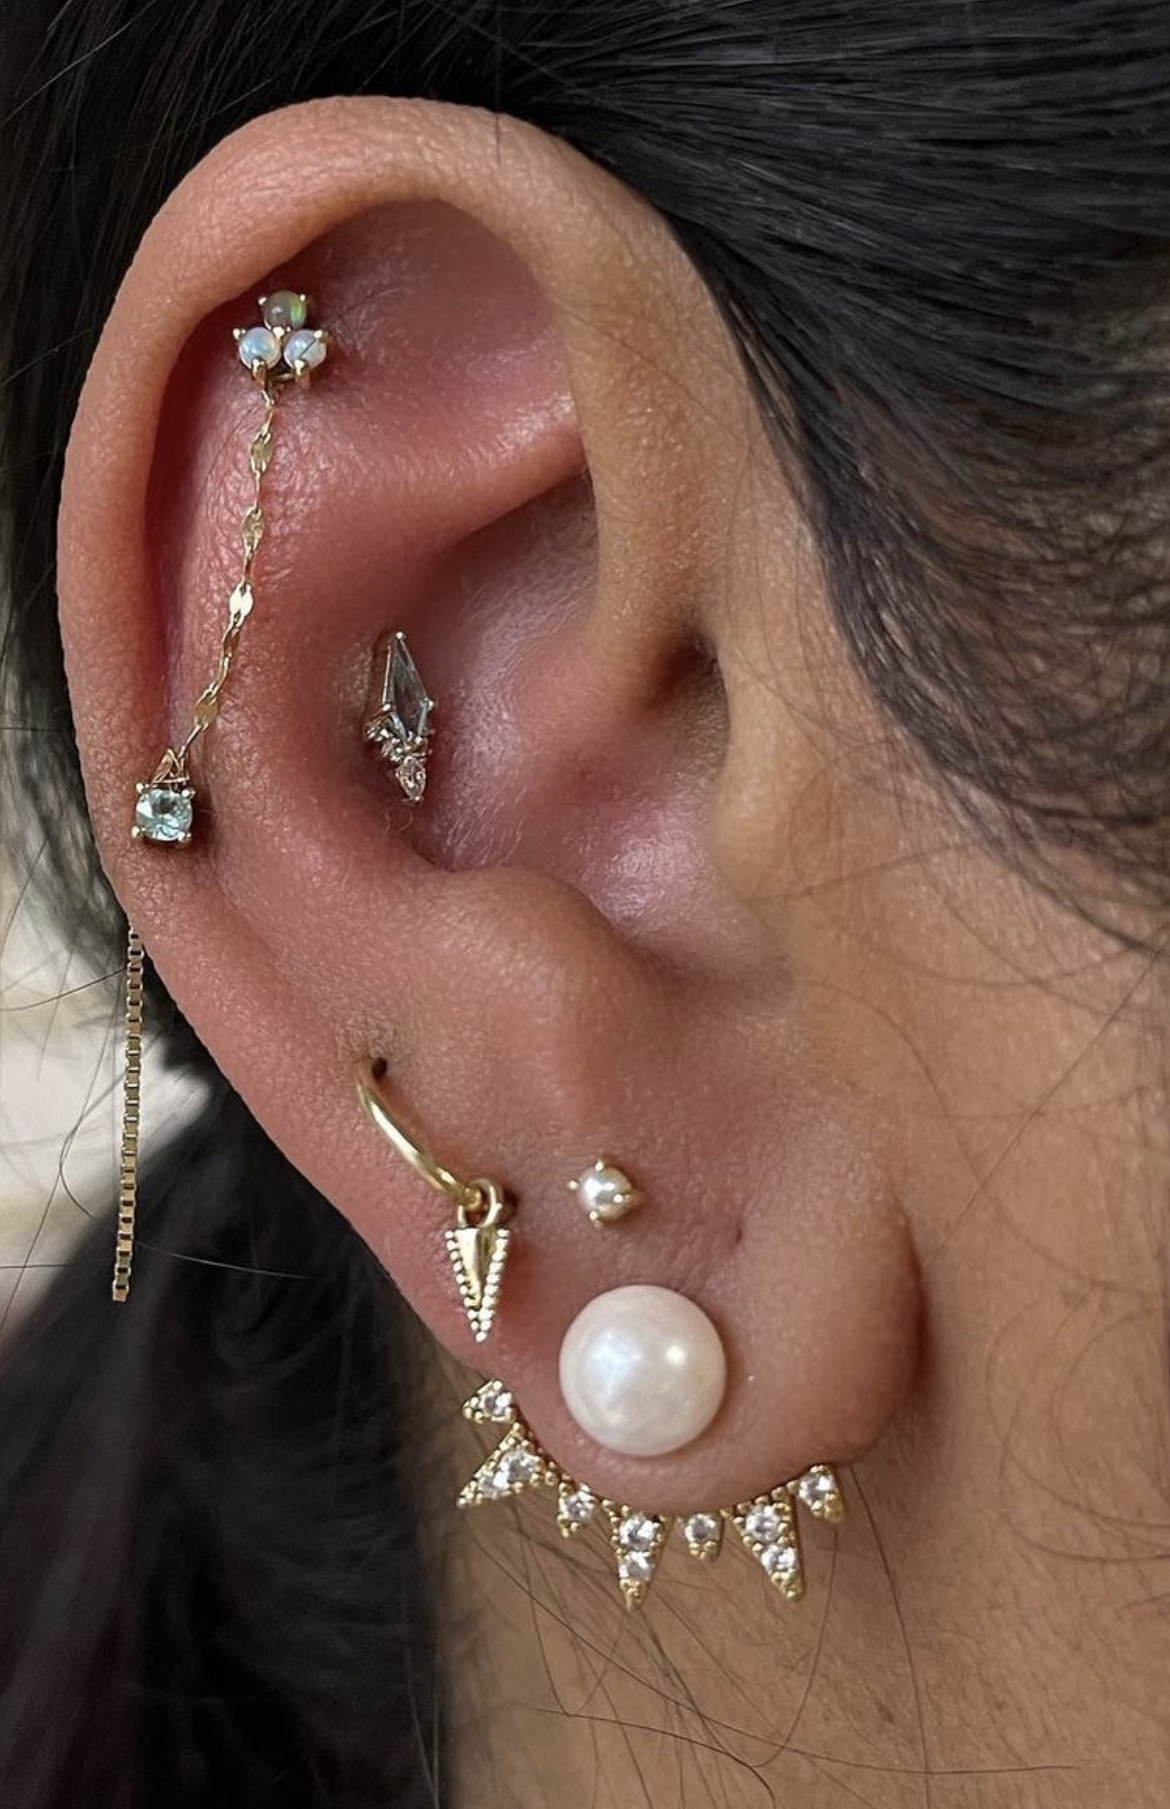 Ear piercing ideas